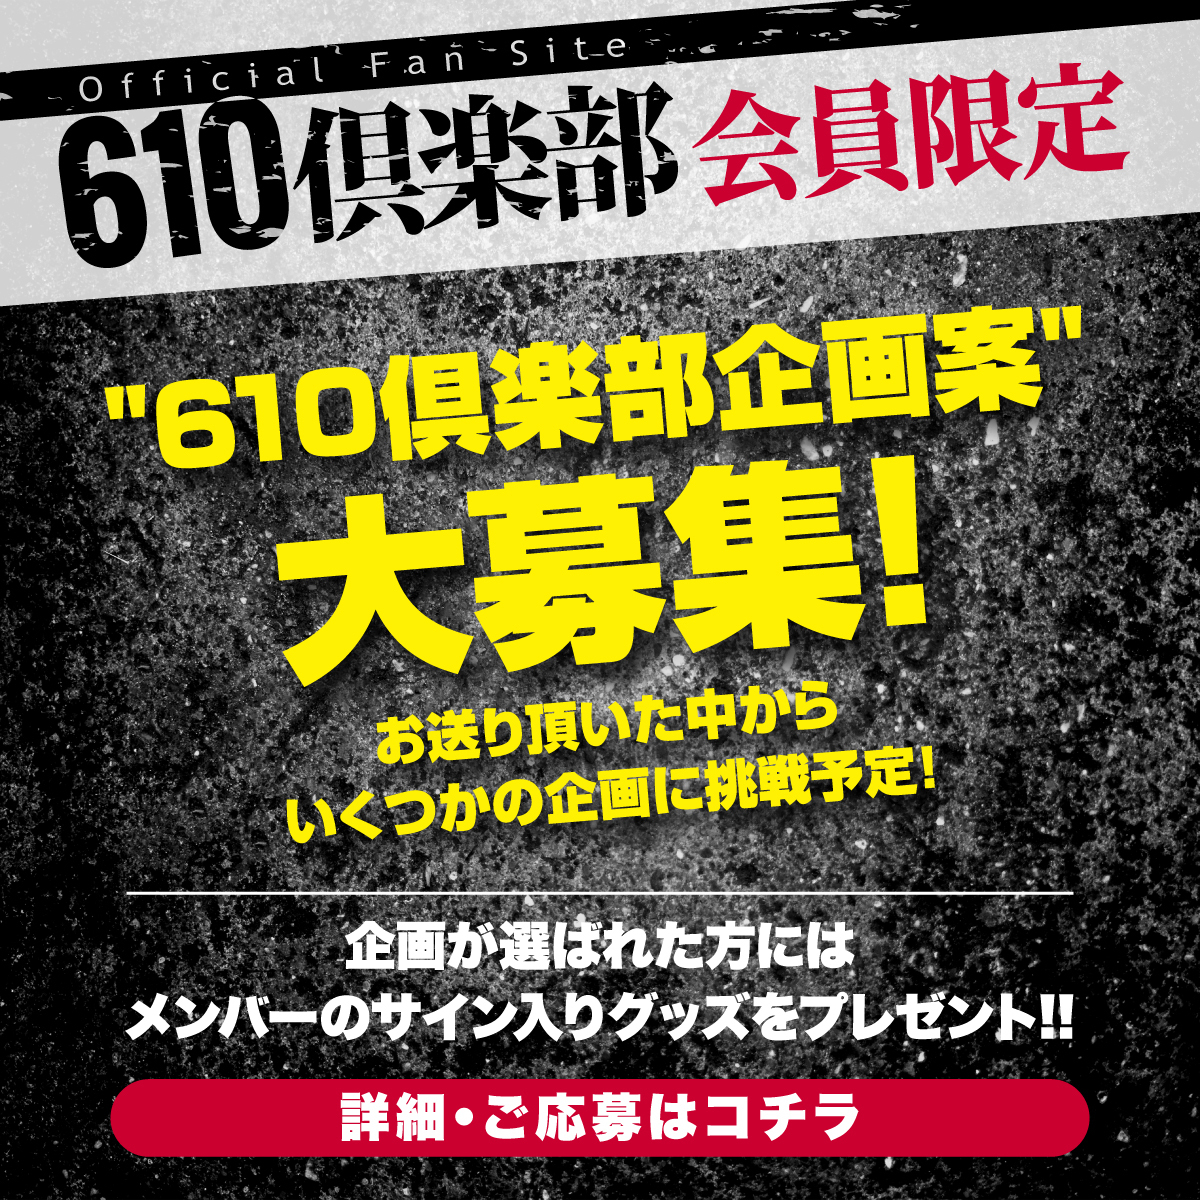 「610倶楽部」企画募集！！